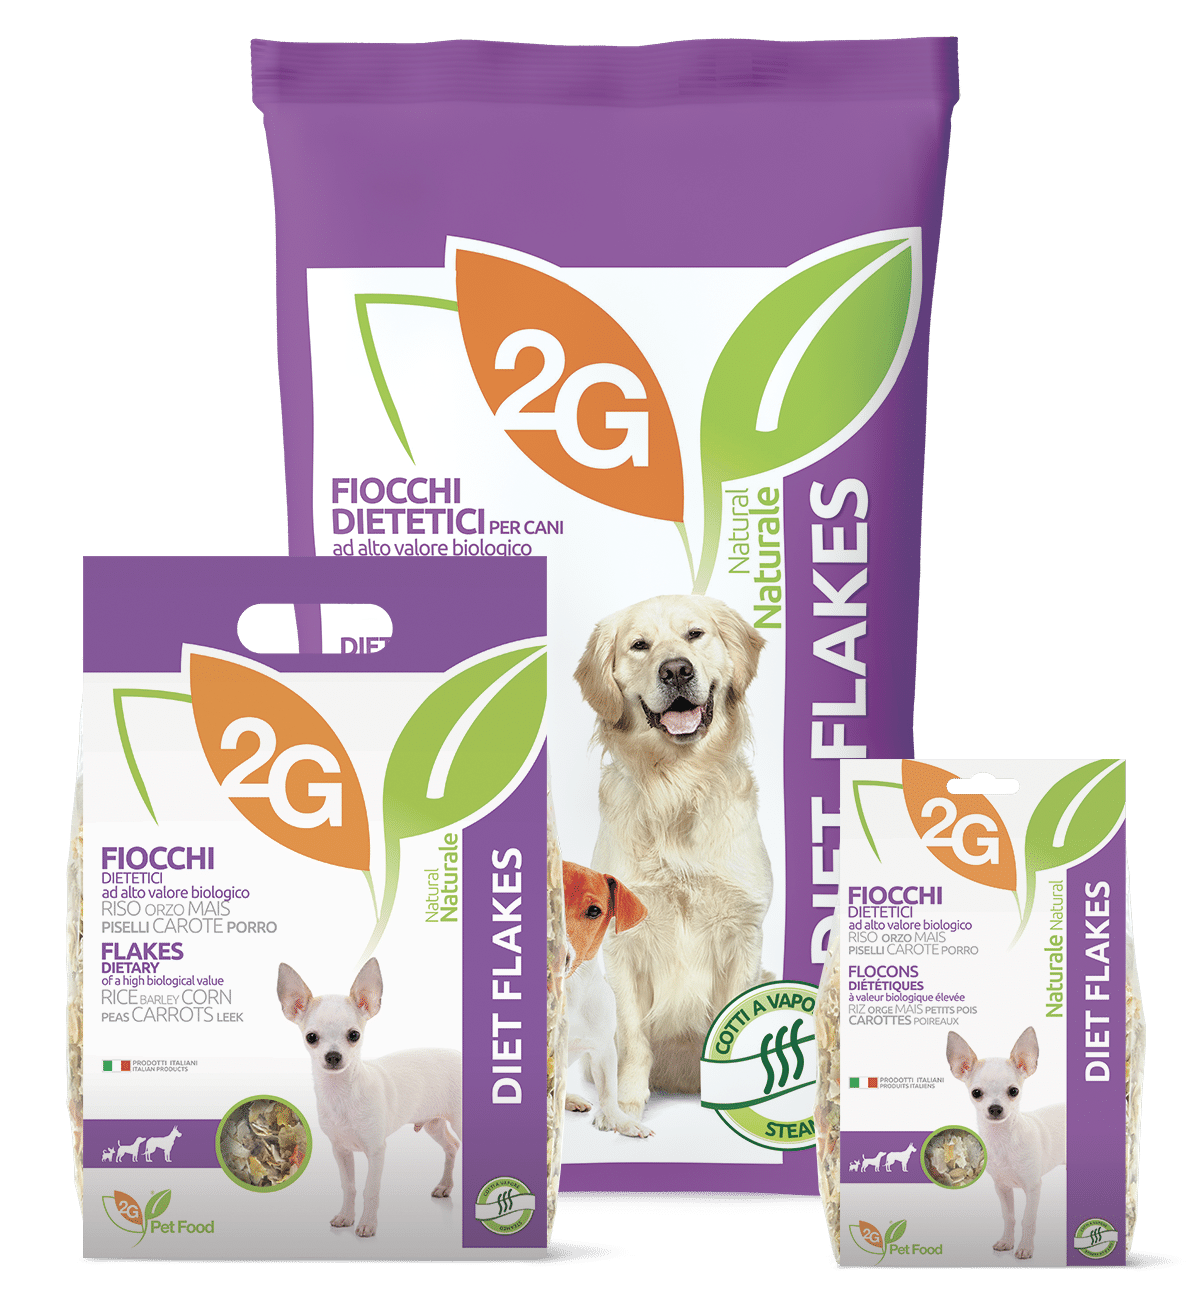 2G PET FOOD Diet Flakes täiendsööt koertele